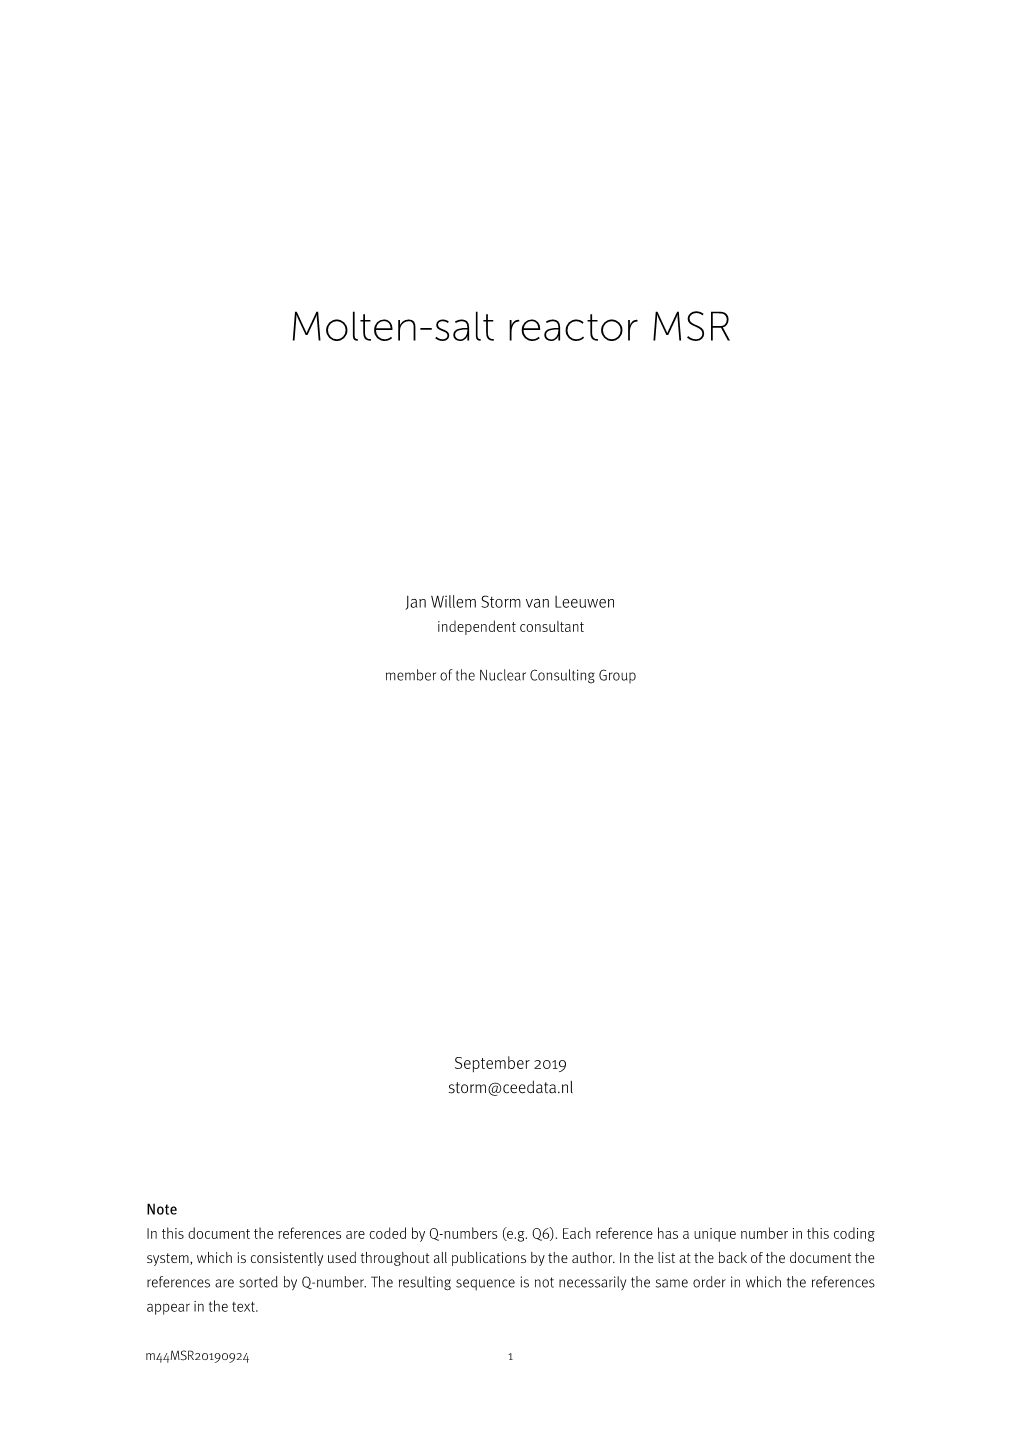 Molten-Salt Reactor MSR